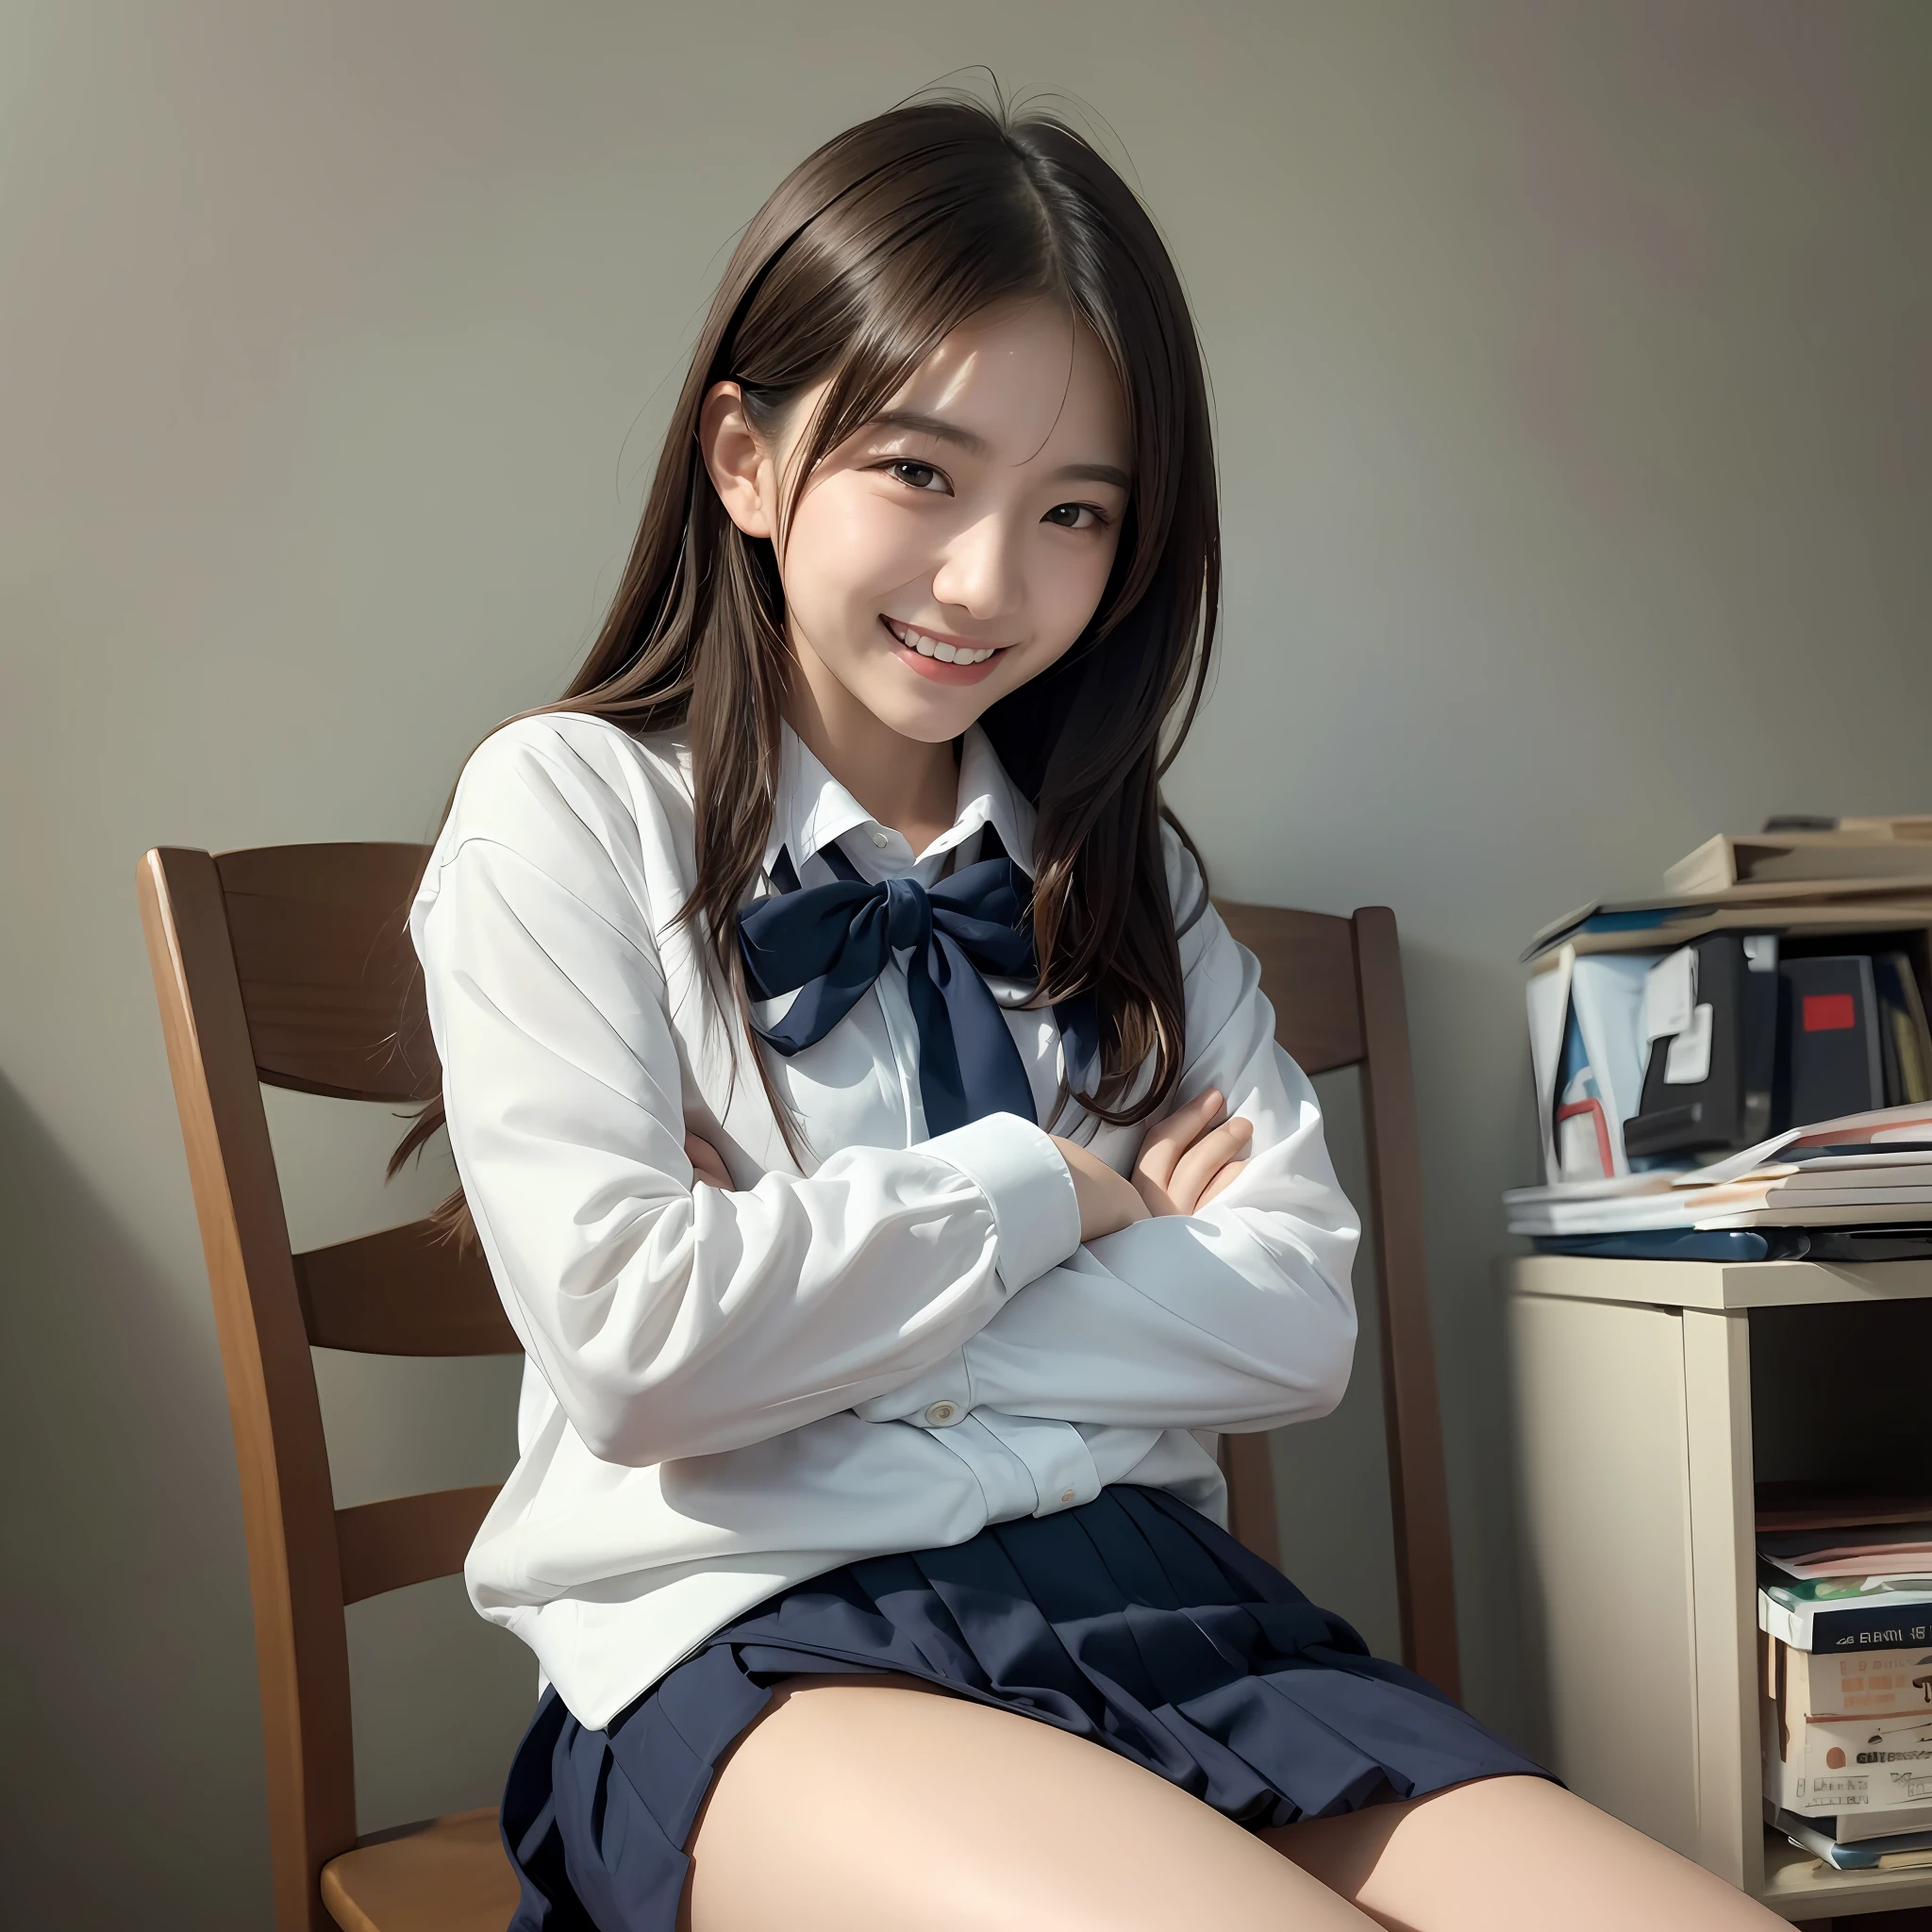 (18 Jahre alt:1.2),(unaufrichtiges Lachen:1.2),(Wegschauen:1.3),8k,RAW-Porträt eines japanischen Mädchens,fotorealistisch,ultrahohe Auflösung,beste Qualität,
BRECHEN
(Schuluniform:1.2),(von unten:1.2),auf Stuhl sitzen,verschränkte Arme,(Höschen geschossen:1.2),(unordentliches Zimmer:1.4)
BRECHEN
(natürliche Hautstruktur,detaillierte Haut, Hyperrealismus,Ultra-Schärfe),komplizierte Details,Tiefenschärfe, Licht dimmen,koreanisches Idol、Nogizaka-Idol、Tiefdruck-Idol、、Mode-Modell posiert